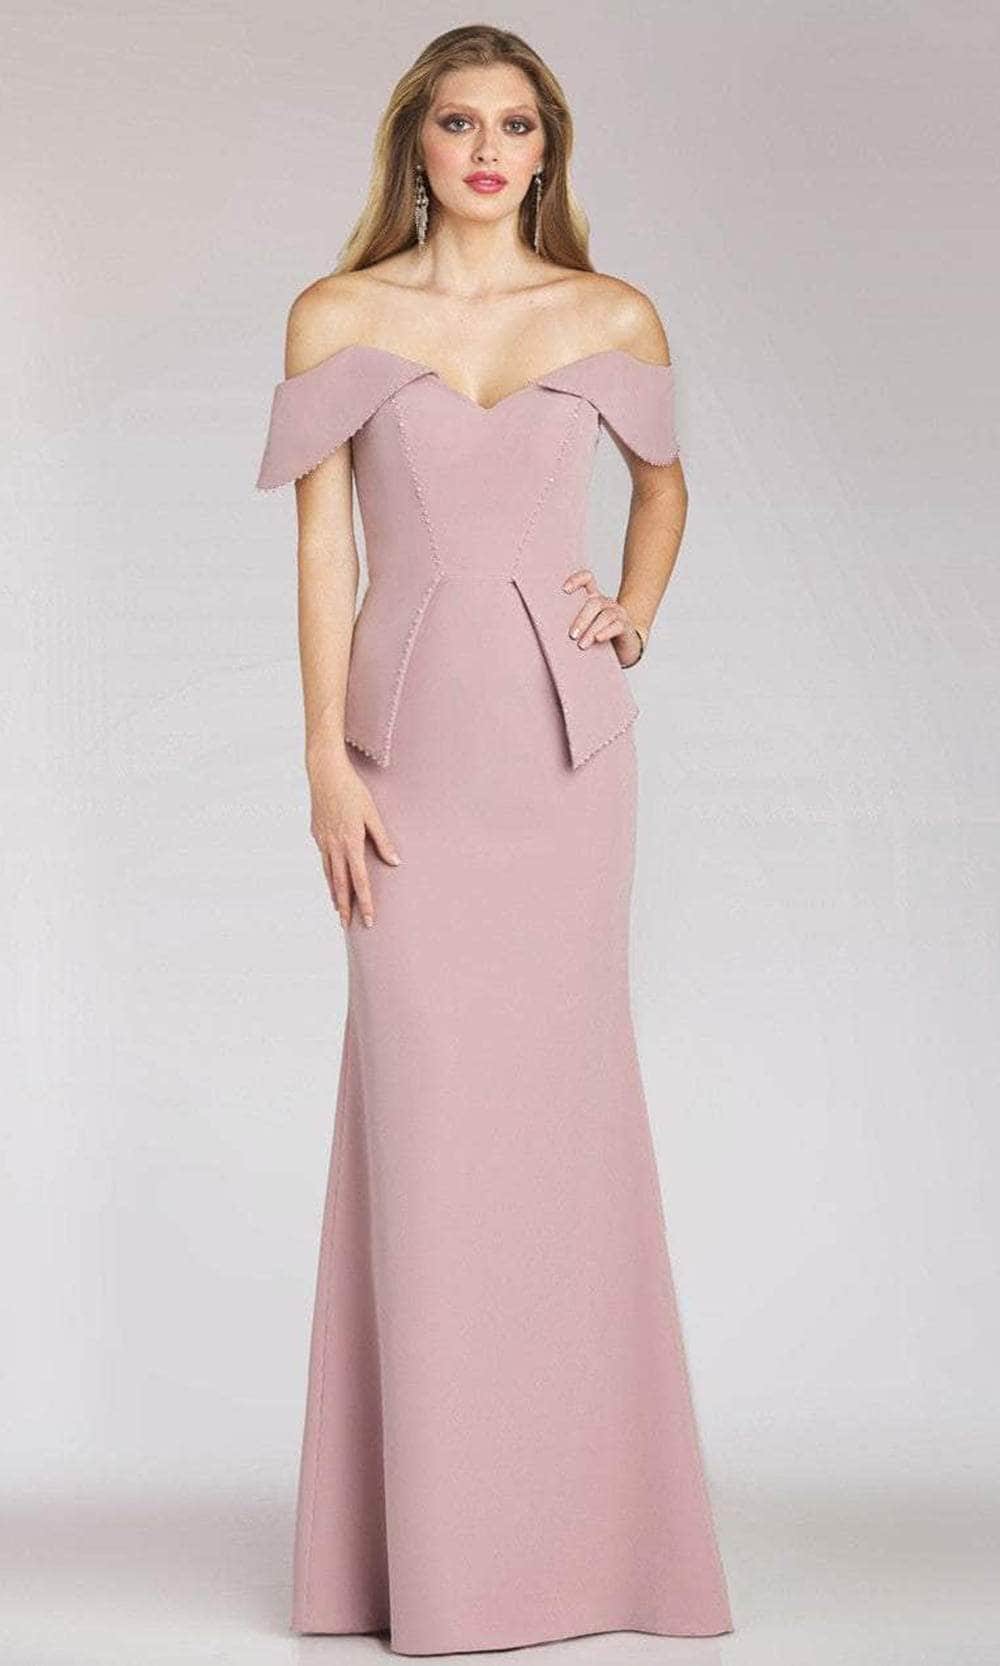 Gia Franco 12206 - Peplum Mermaid Evening Dress Special Occasion Dress 6 / Mauve